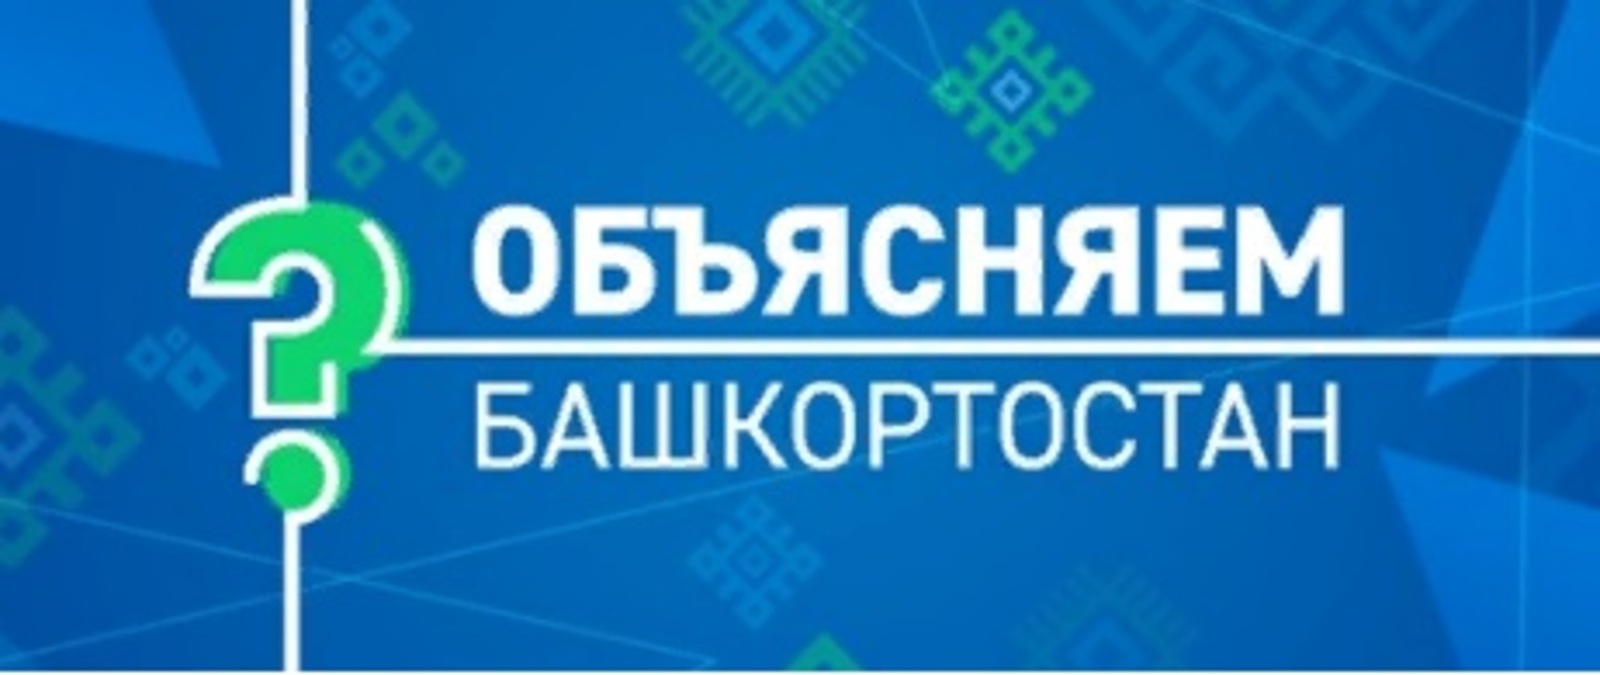 В Башкортостане заработали электронные ресурсы и паблики для информирования жителей по волнующим и актуальным вопросам